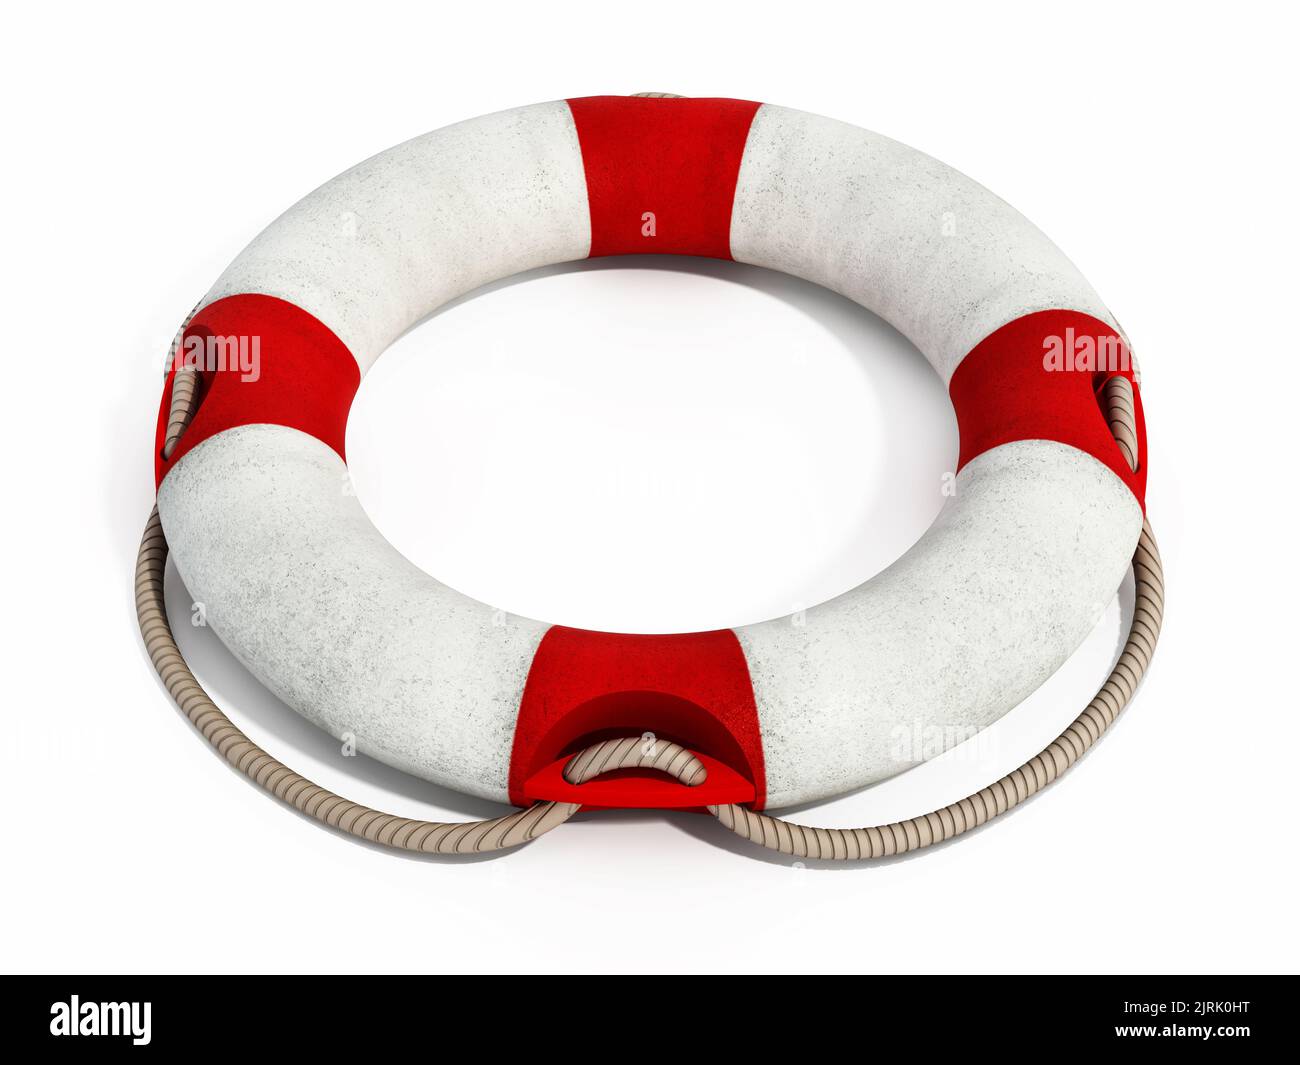 Life buoy isolated on white background. 3D illustration. Stock Photo